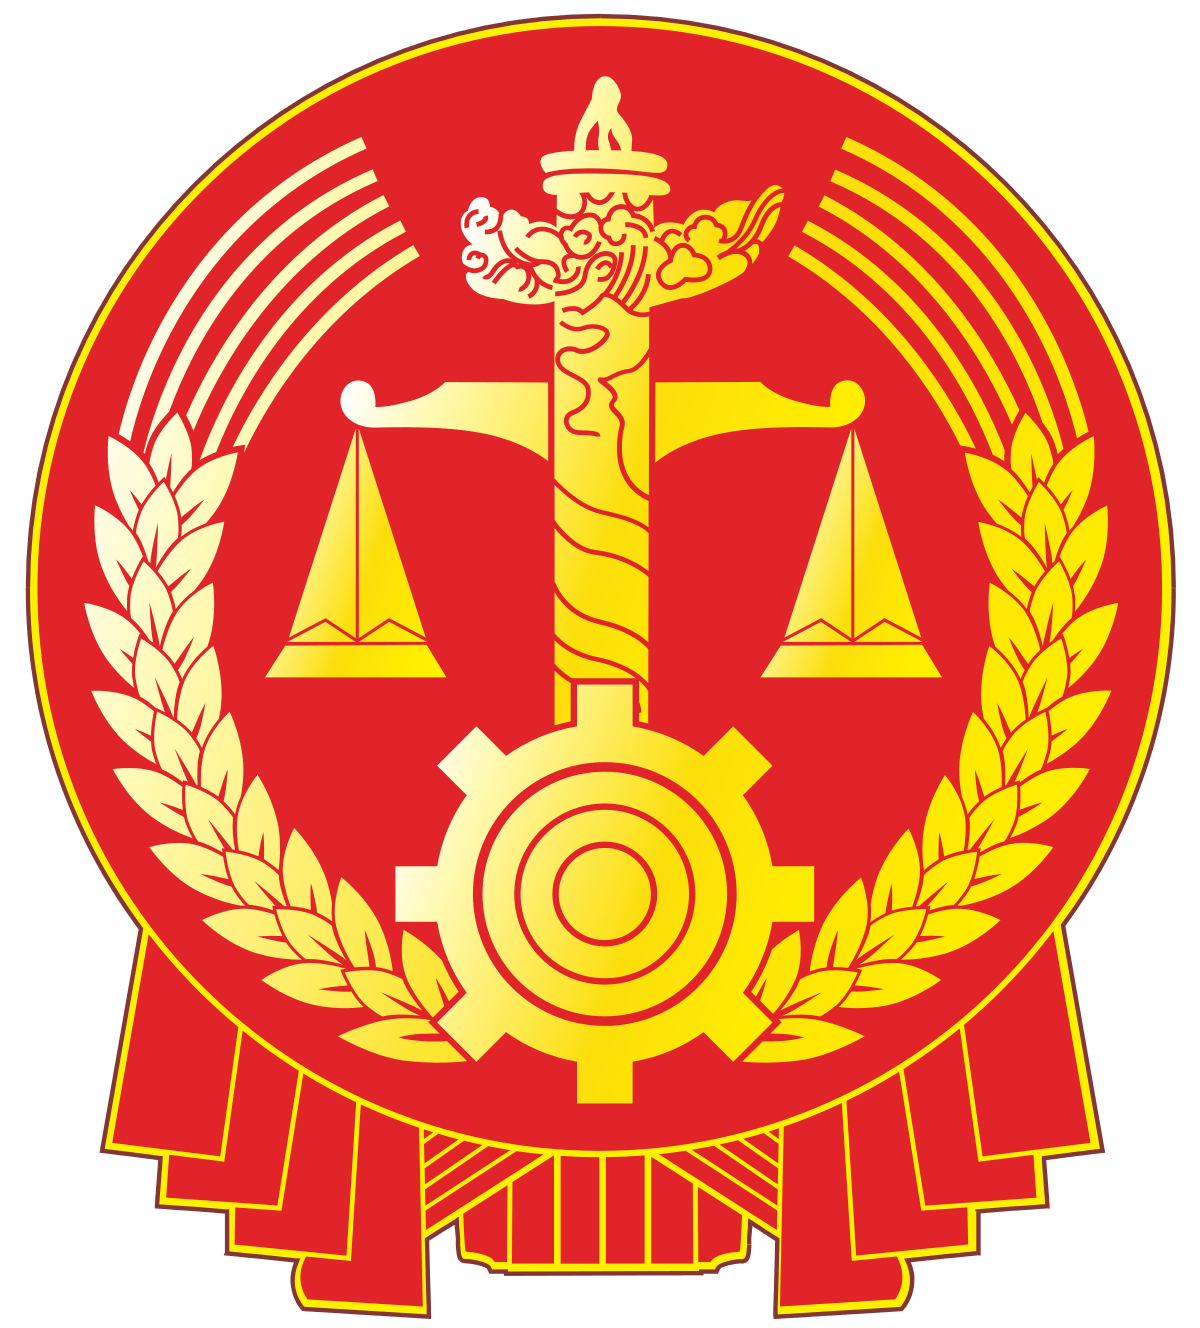 Courtroom Logo - Judicial system of China